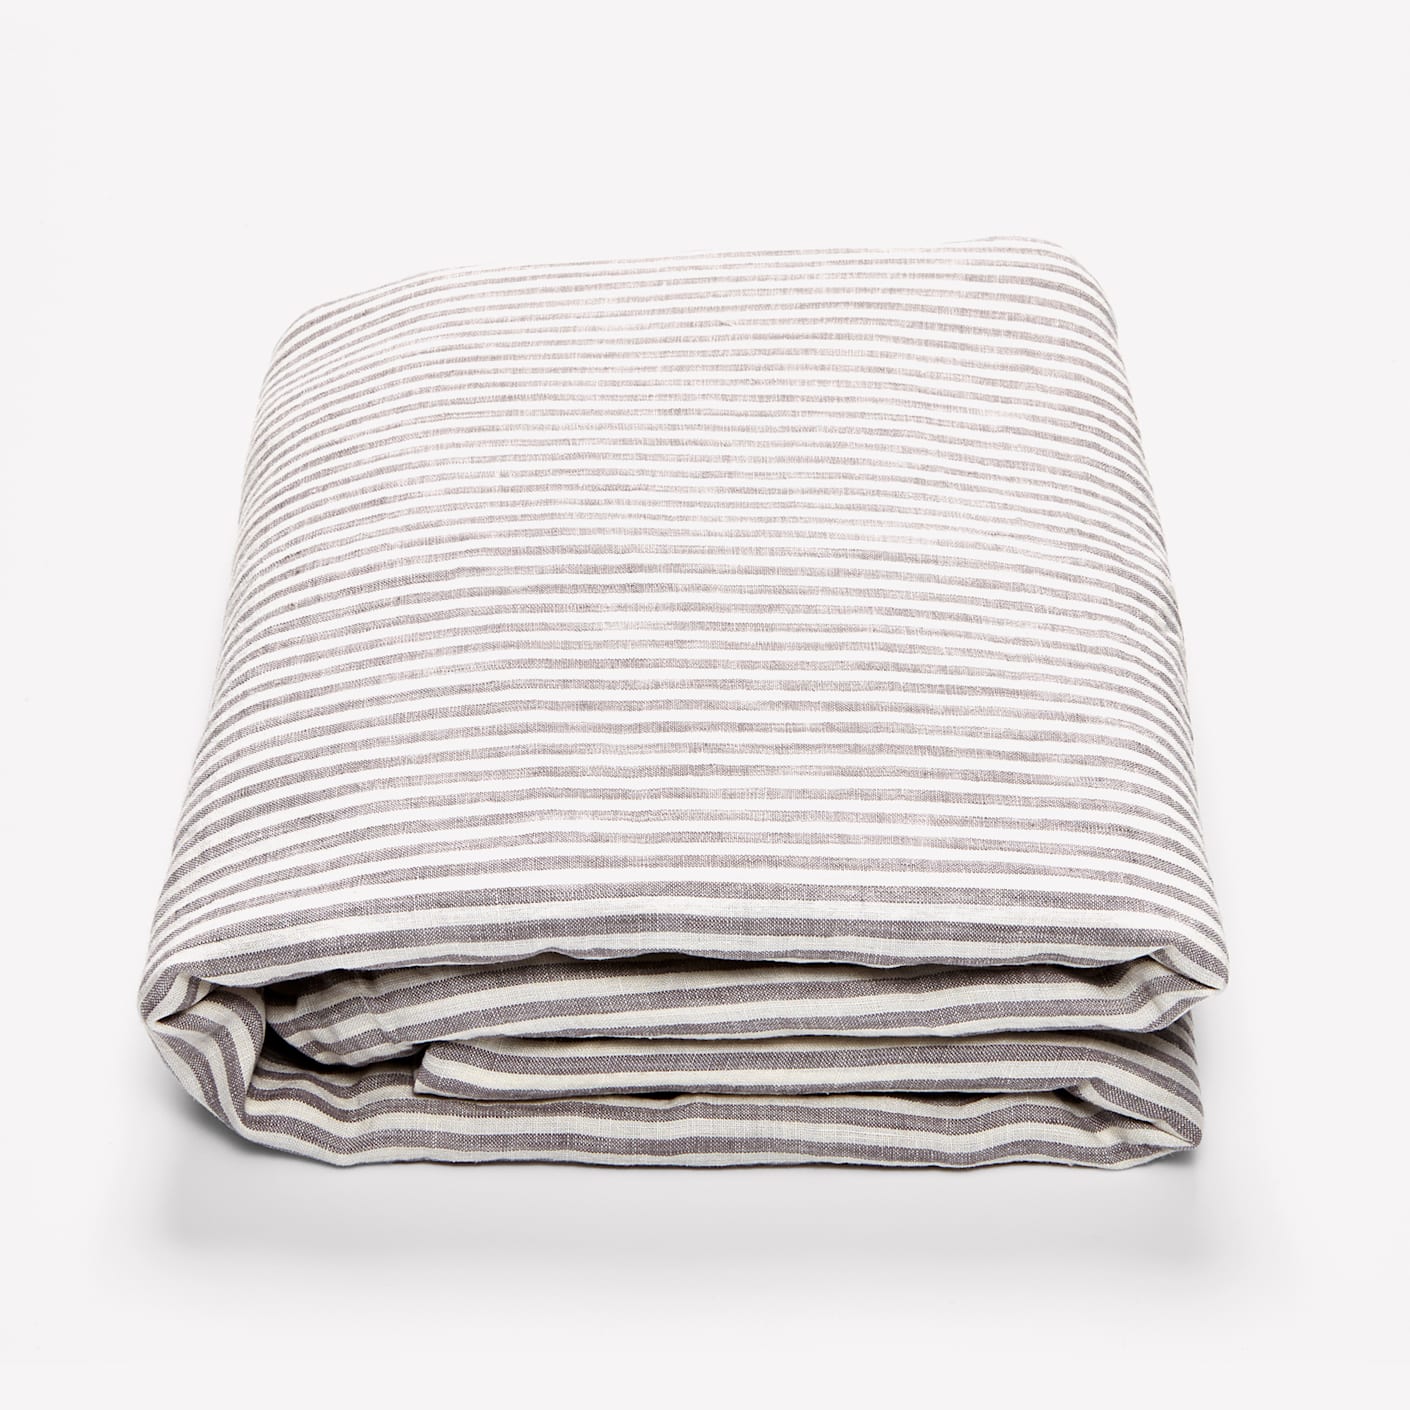 In Bed Linen Duvet Cover, Stripe | Bespoke Post